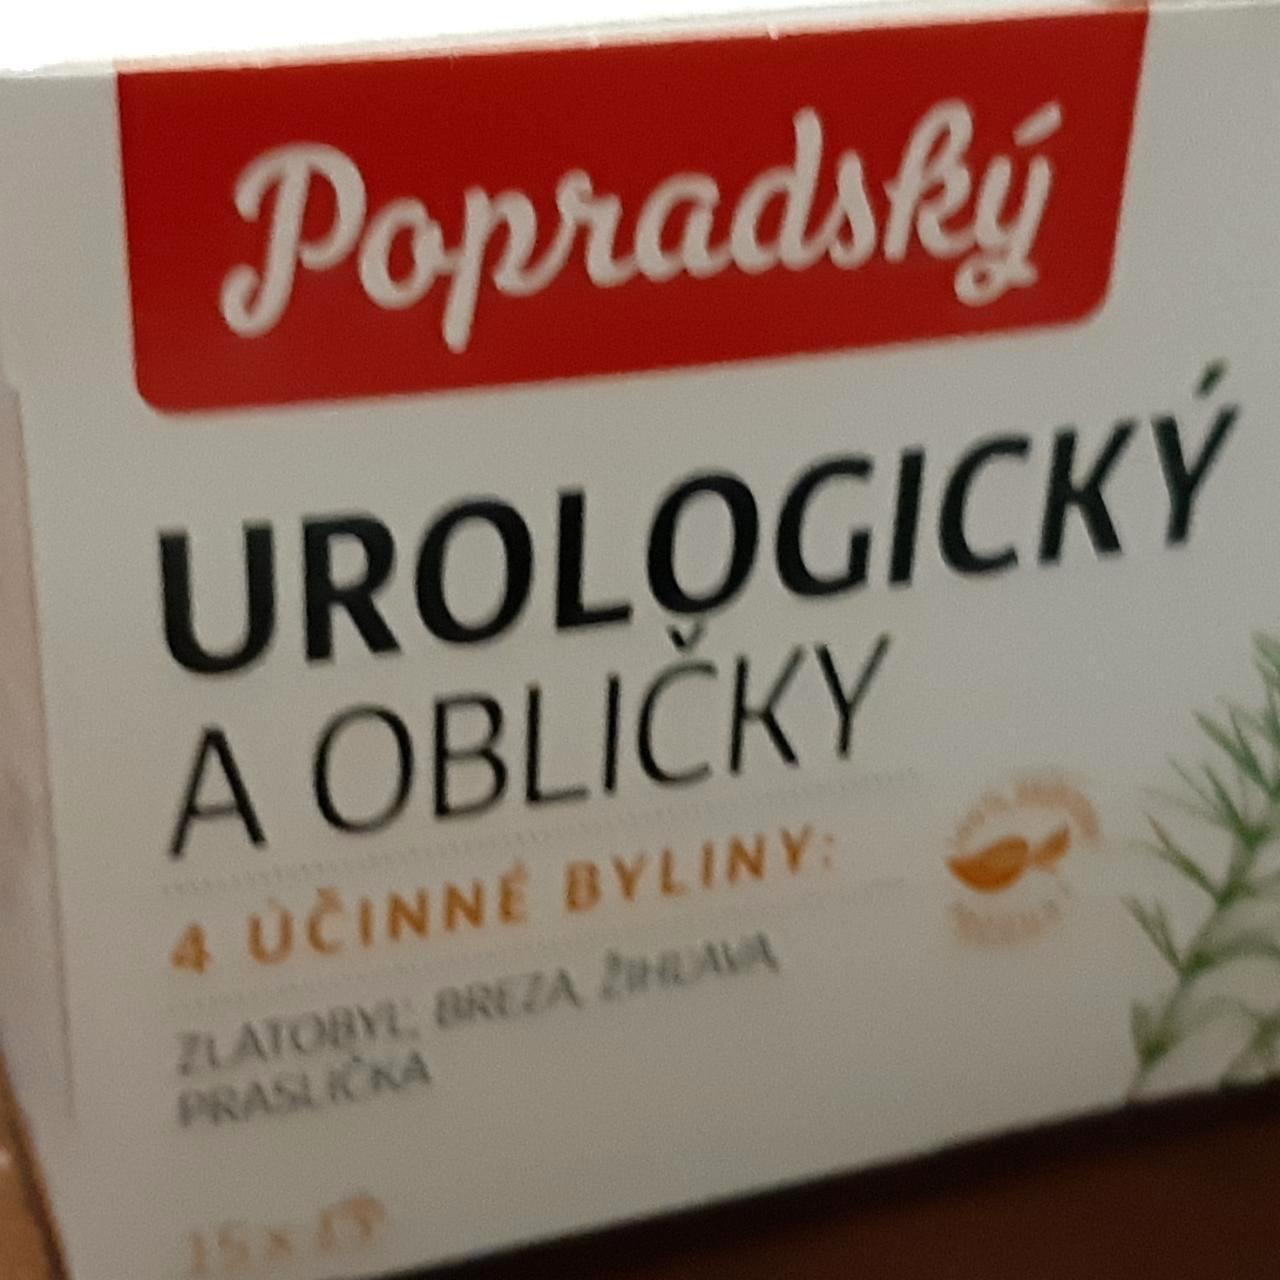 Képek - Čaj urologický a obličky Popradský